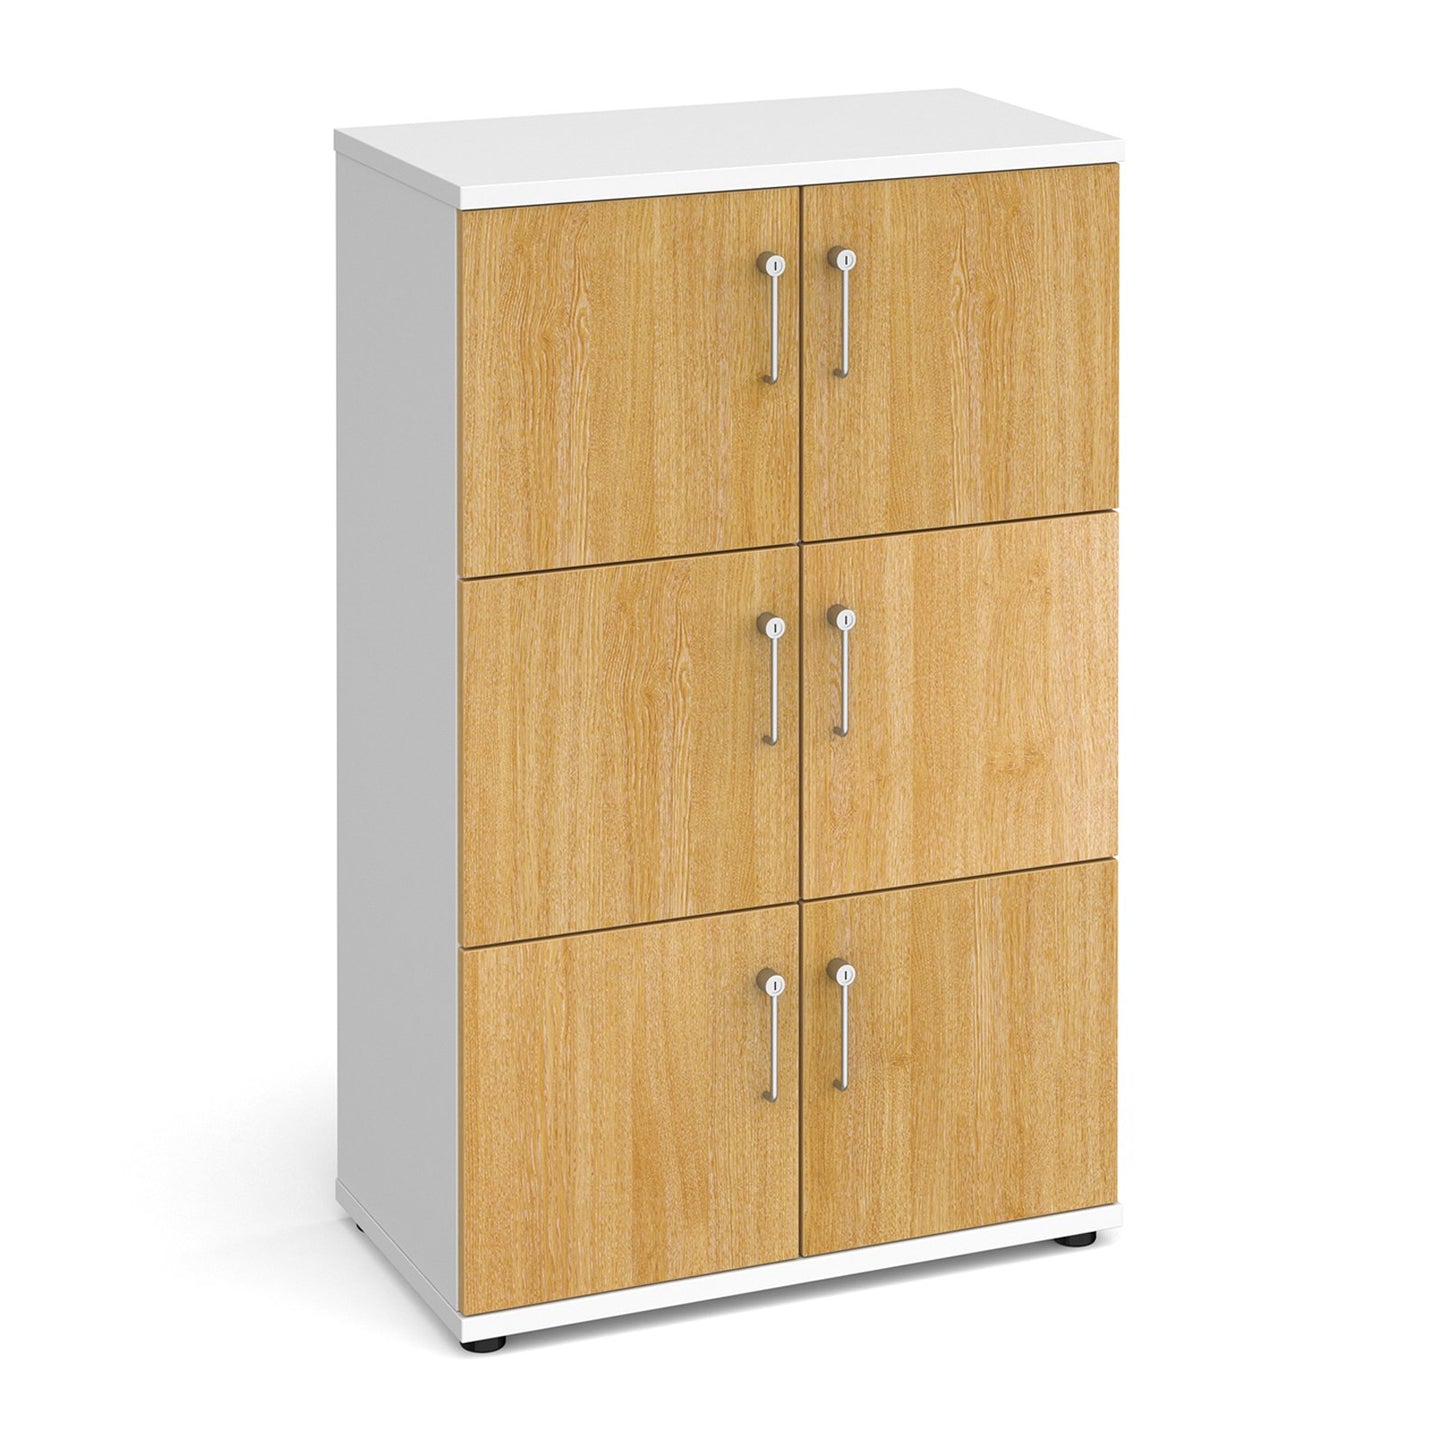 Wooden storage lockers